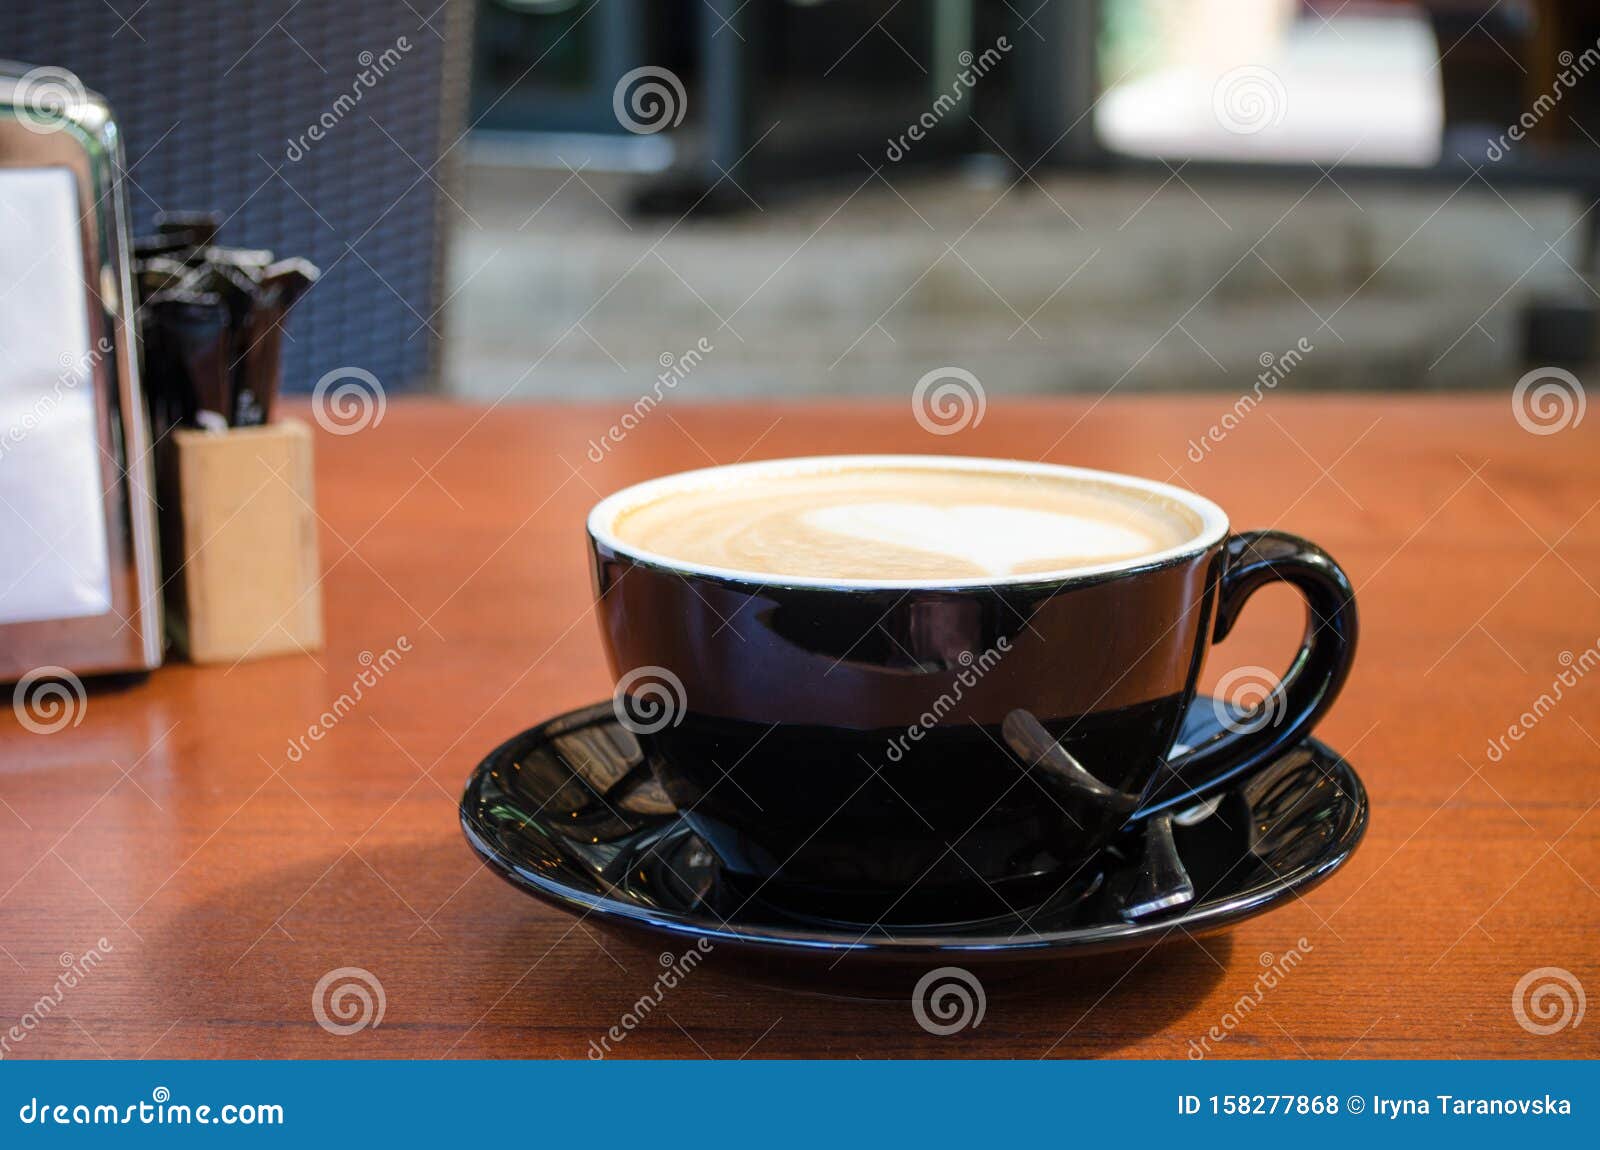 Разве можно быть такой размазней чашка стоит. Кофейник на салфетке. Чашка стоит на круглом столике. Кружка стоит на столе. Кружка стоит на столе фото вид сбоку.